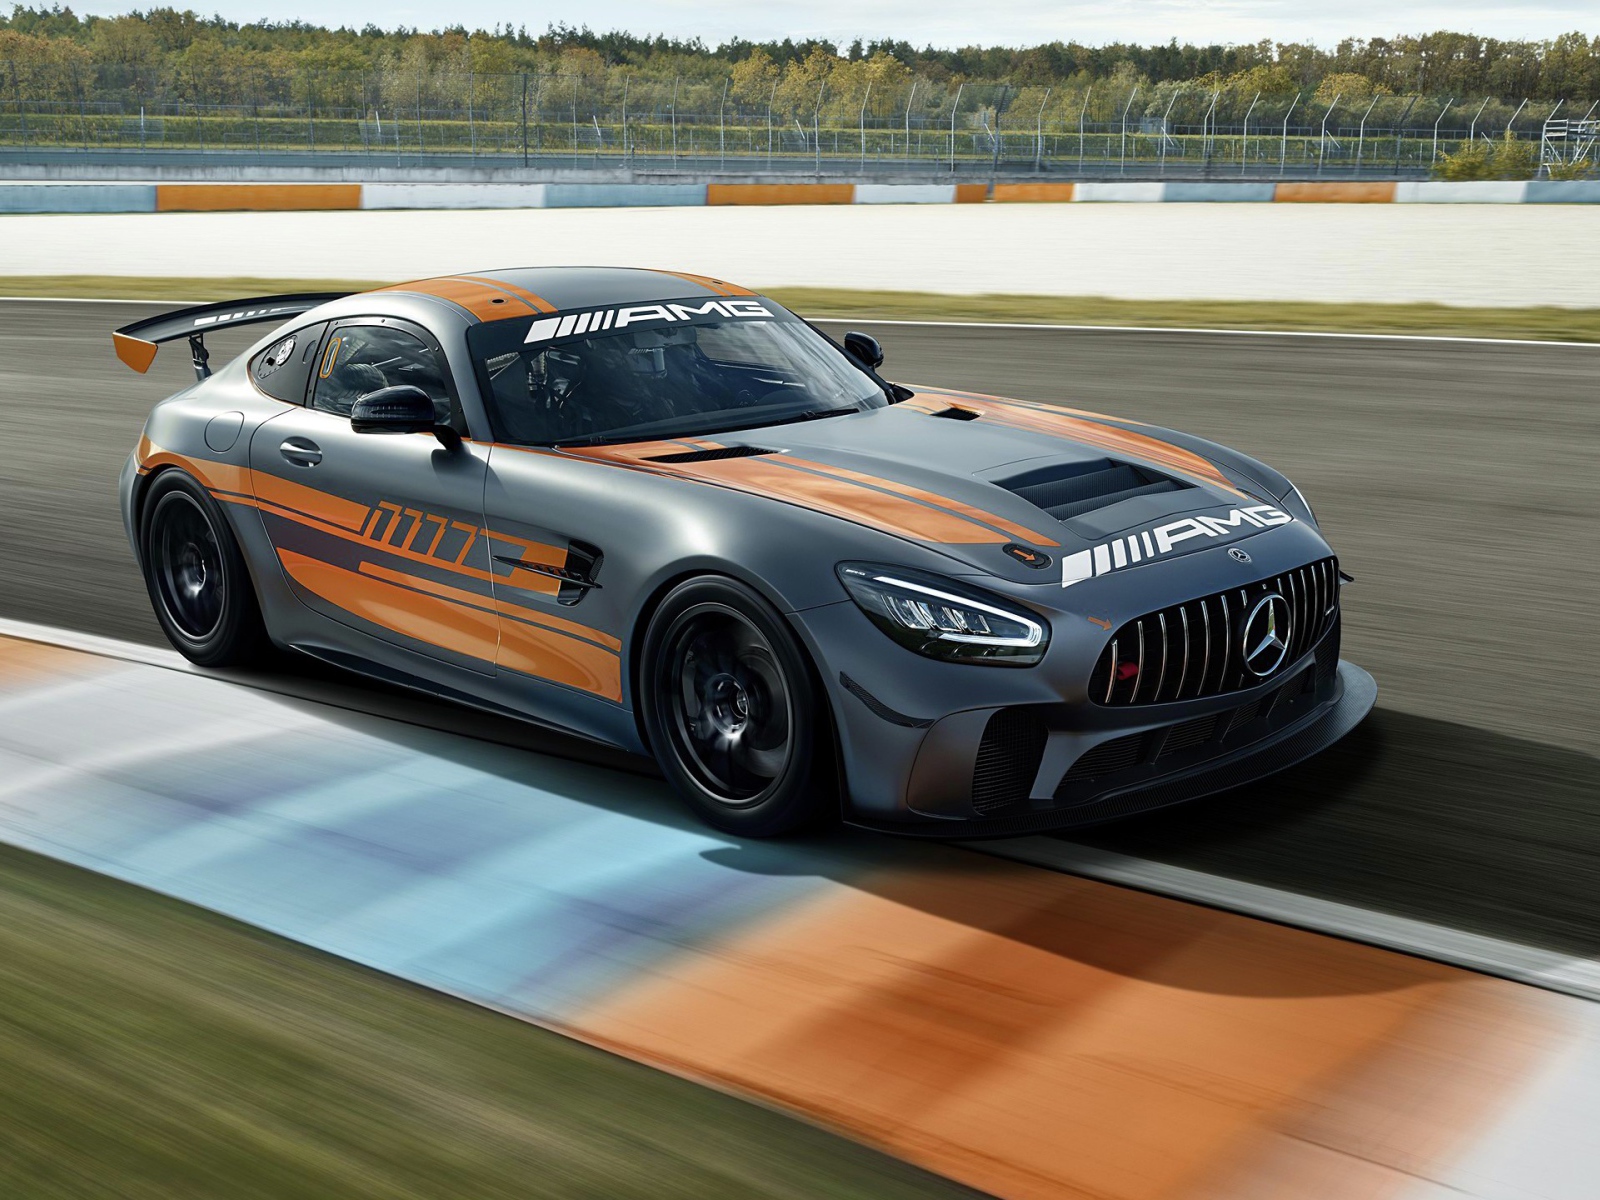 Автомобиль Mercedes-AMG GT4 2020 года на гоночной трассе